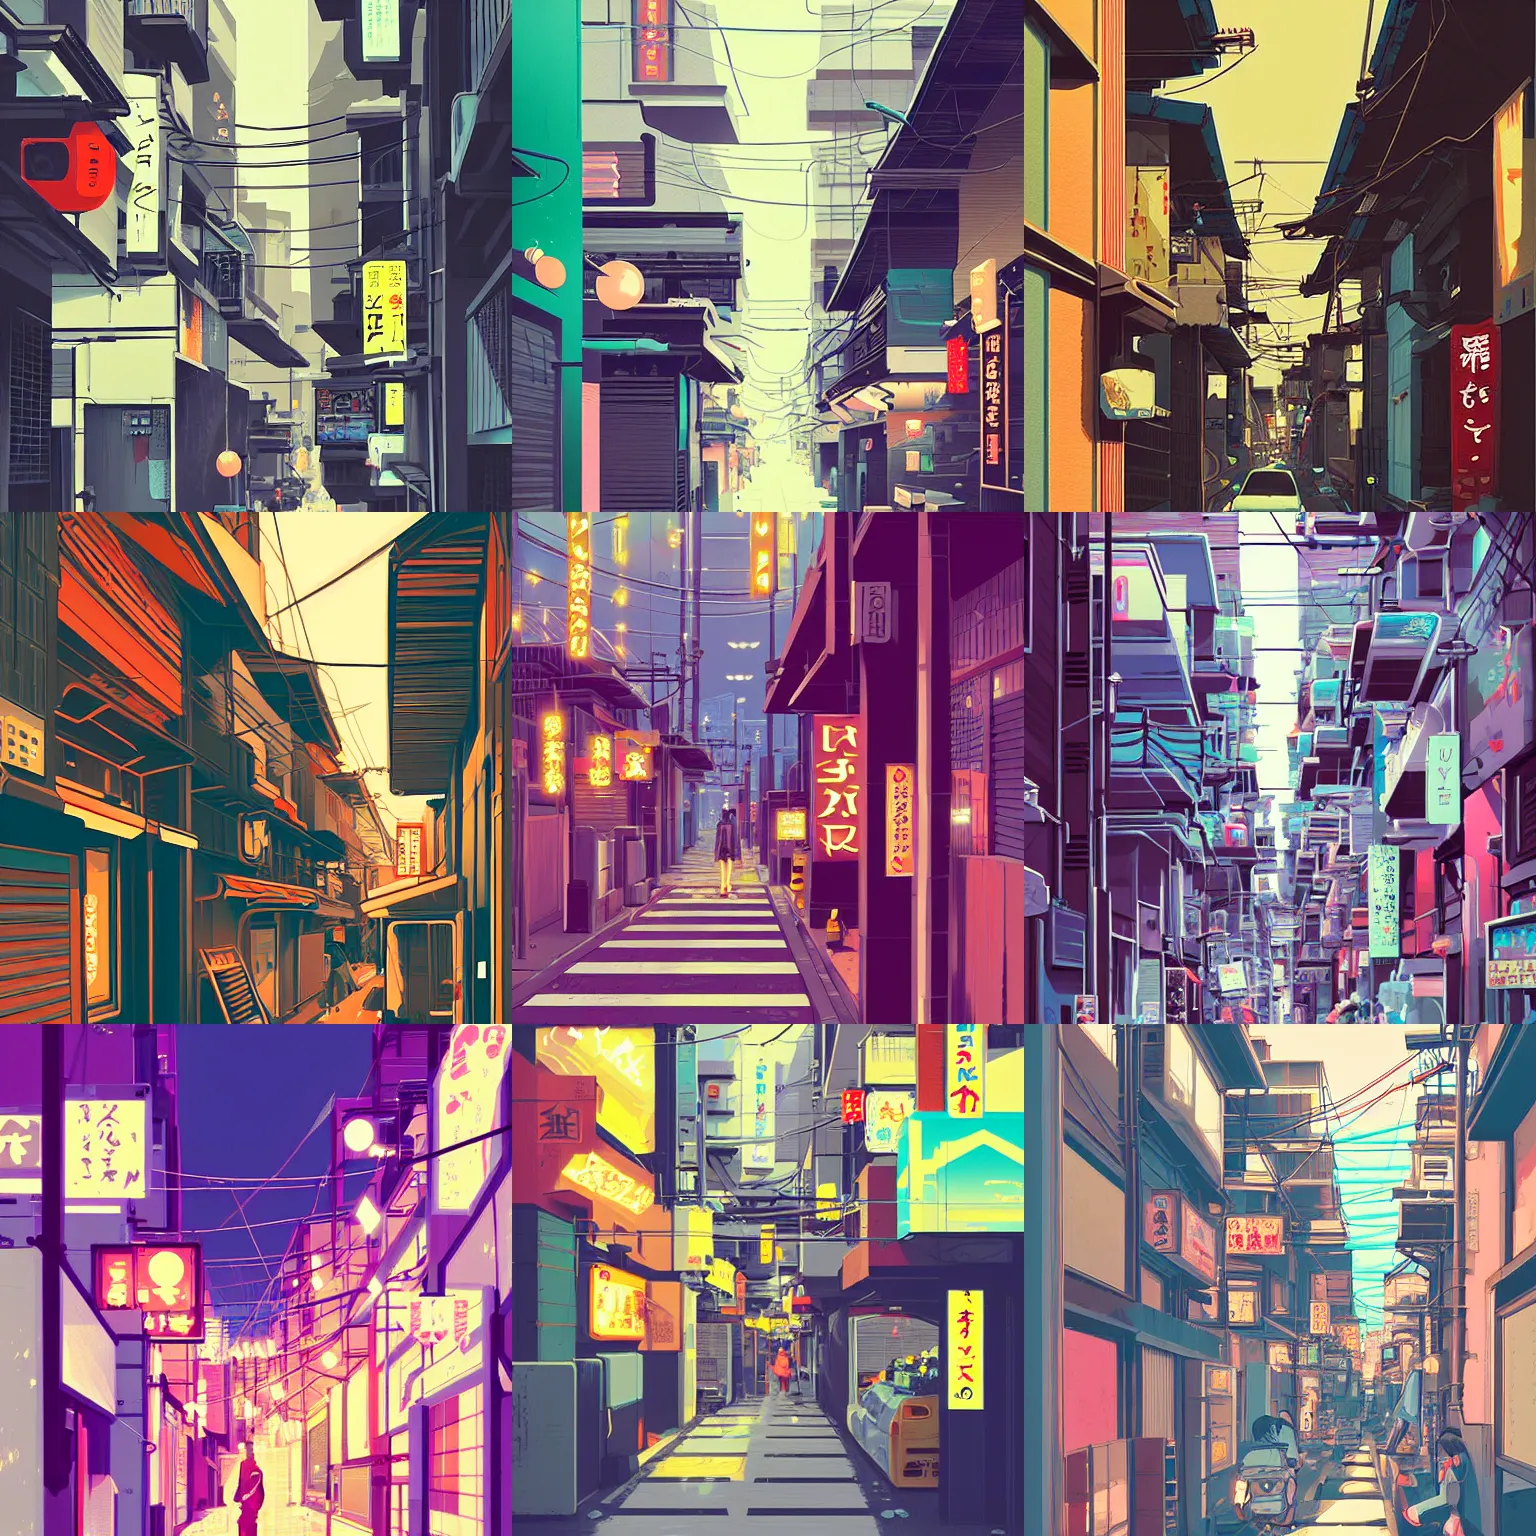 Prompt: tokyo alleyway by james gilleard, beautiful